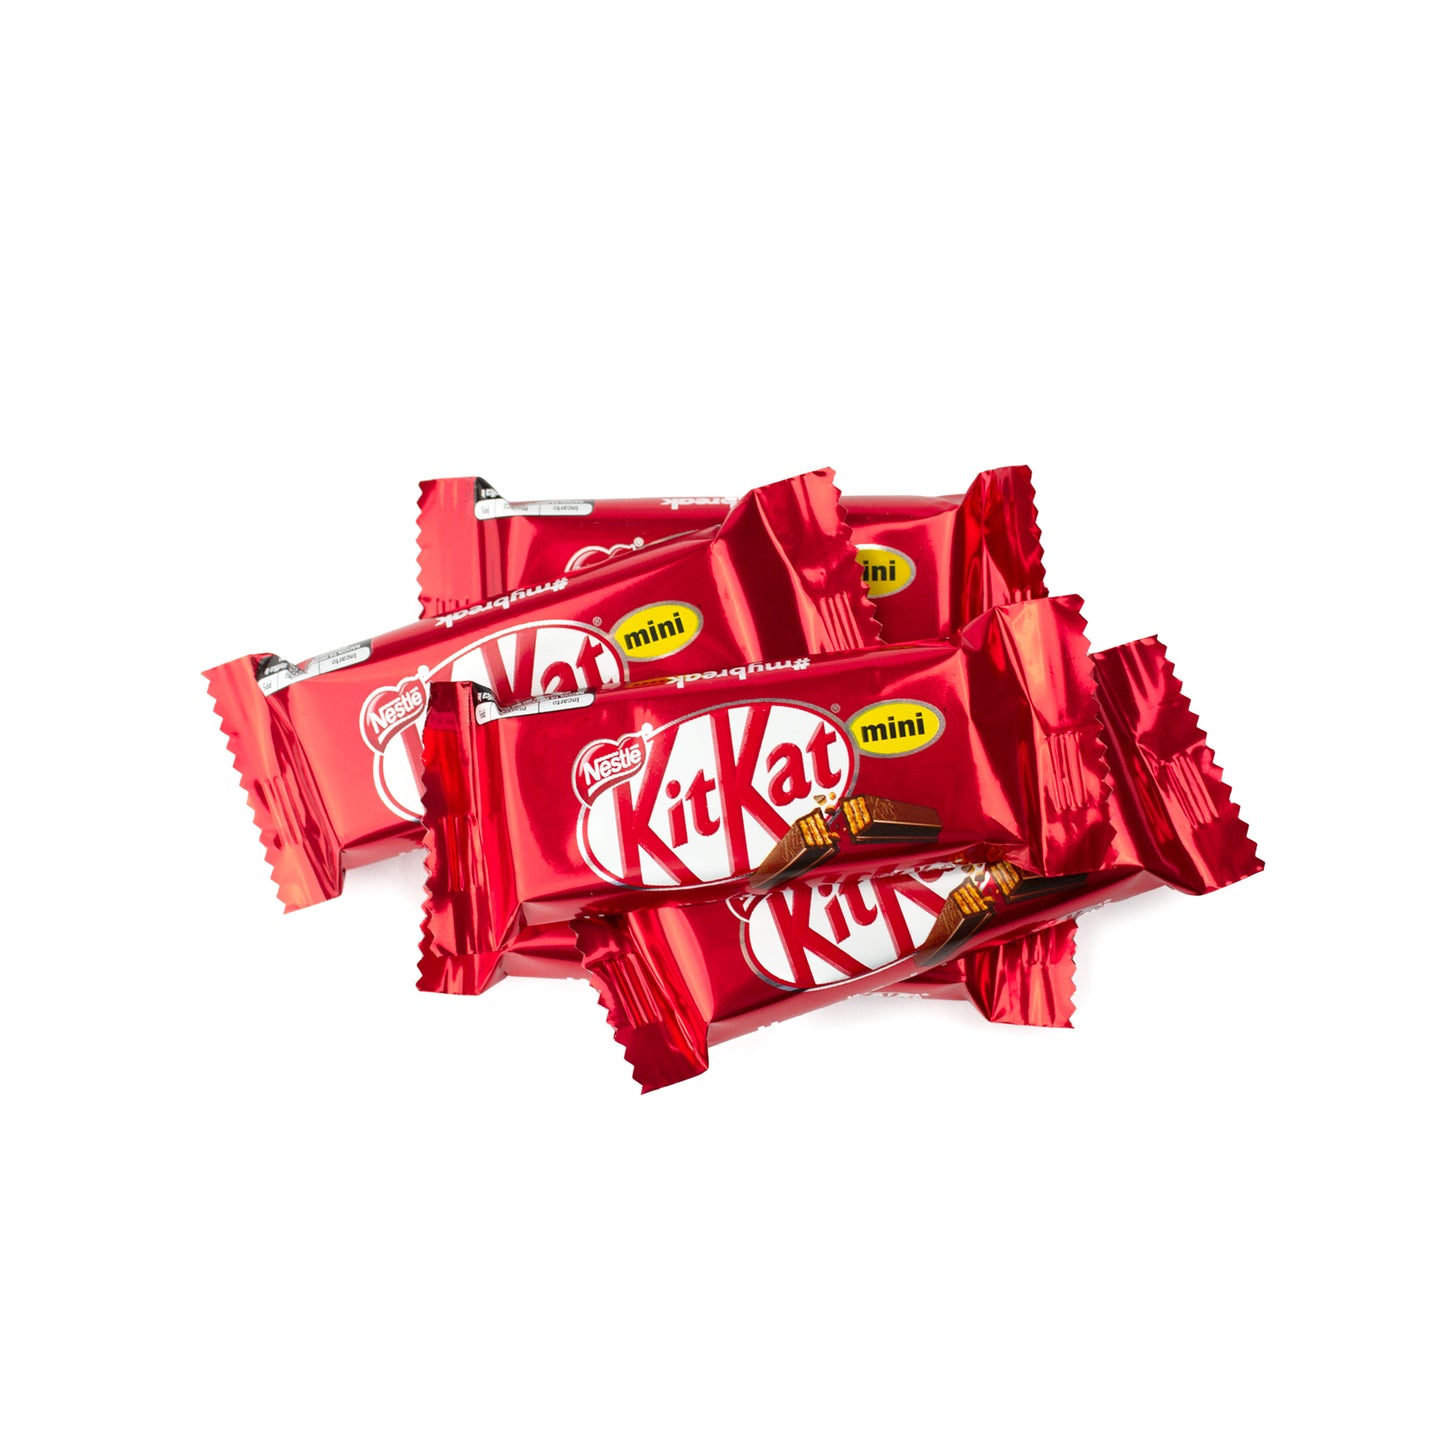 Kit Kat 6,8kg